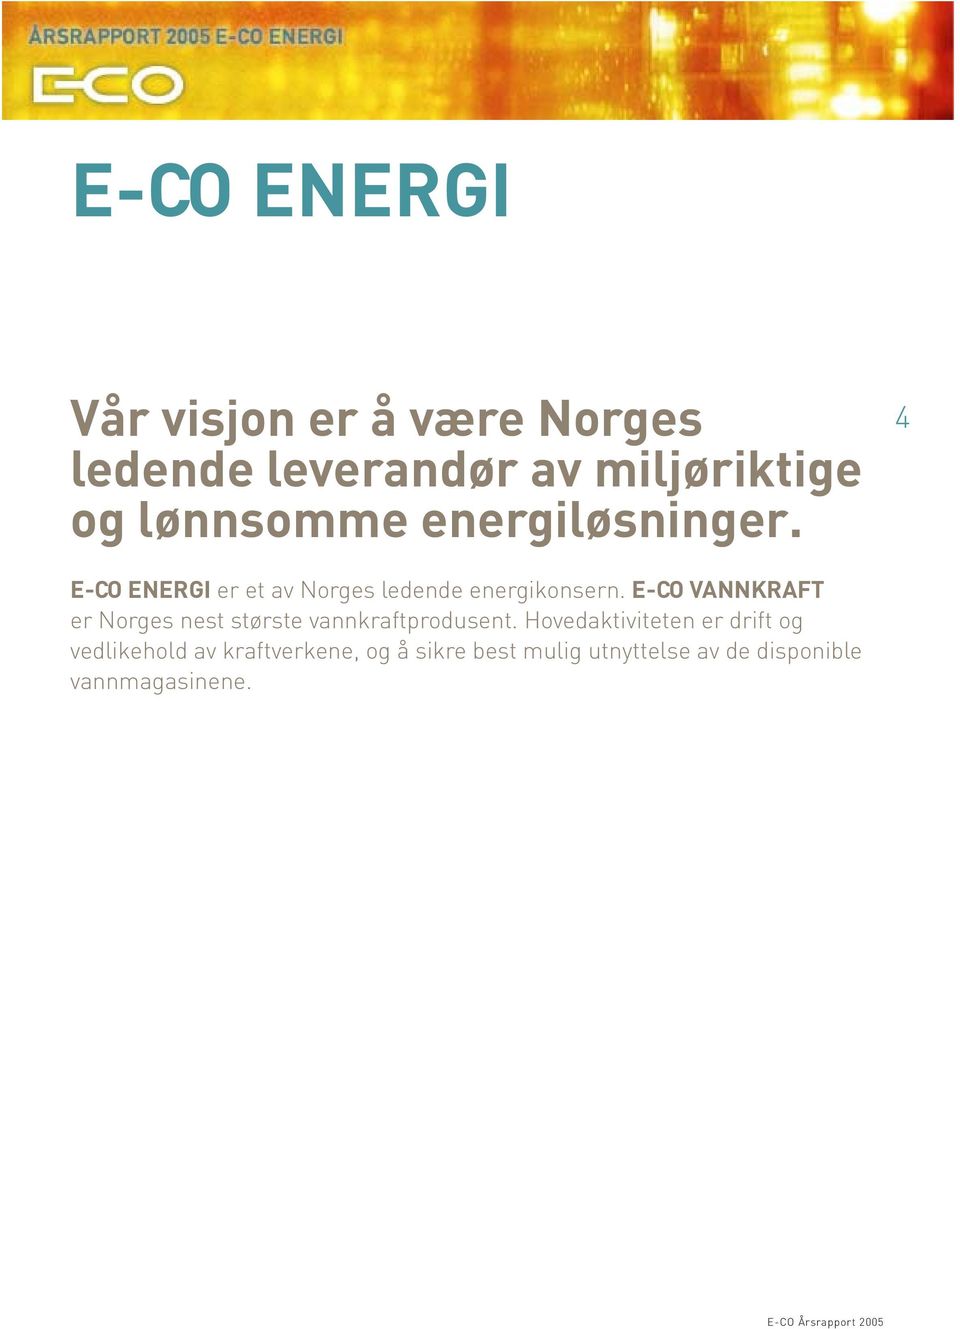 E-CO VANNKRAFT er Norges nest største vannkraftprodusent.